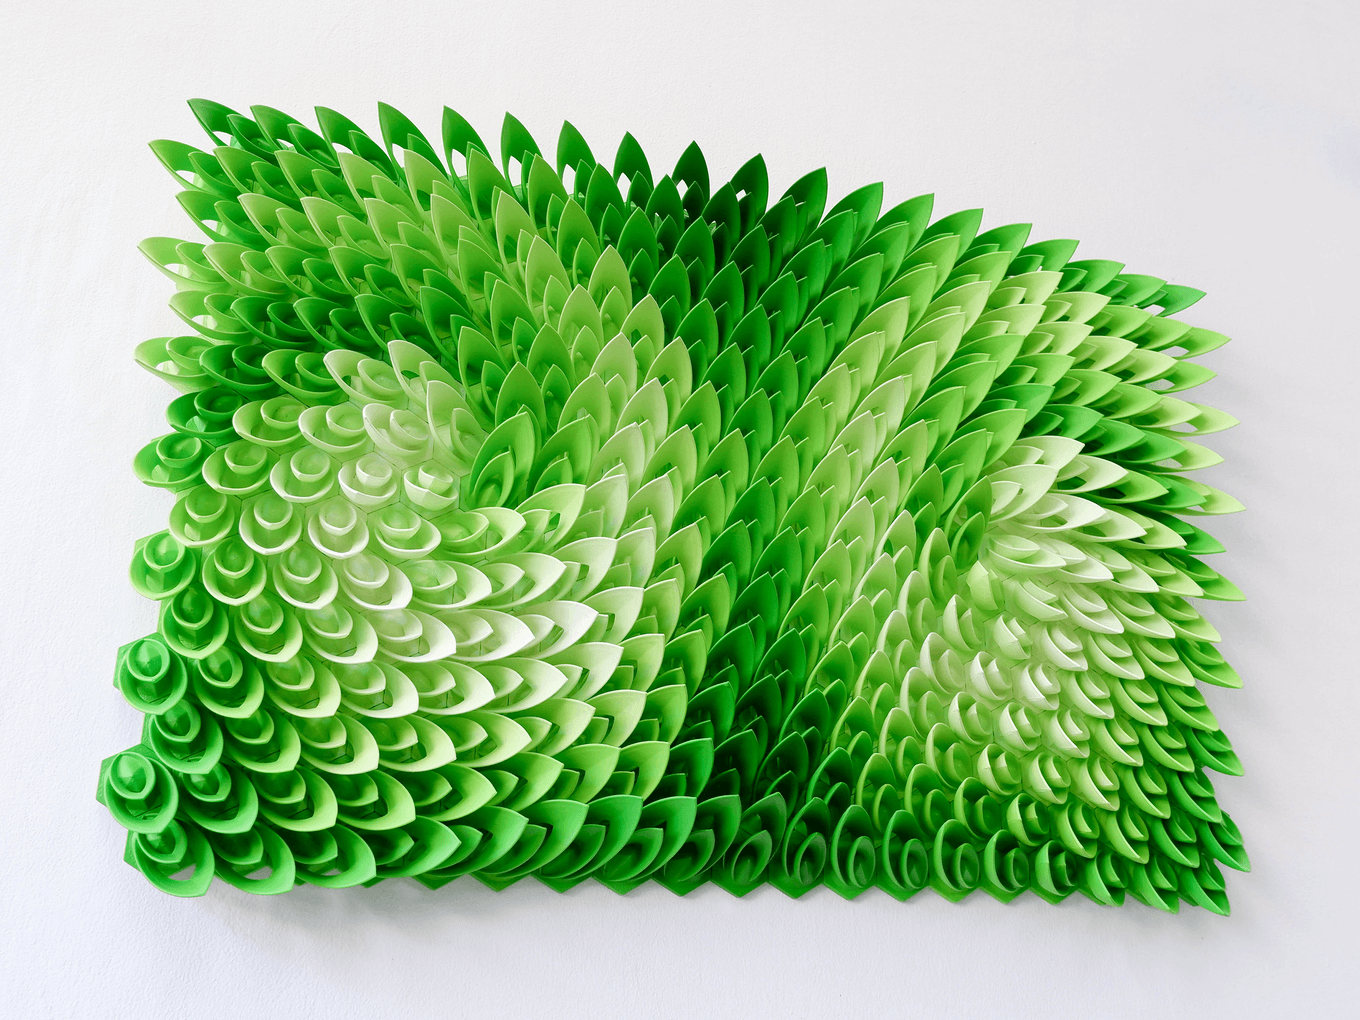 Swirling Ivy | Herschel Shapiro | Abstract Relief Sculpture